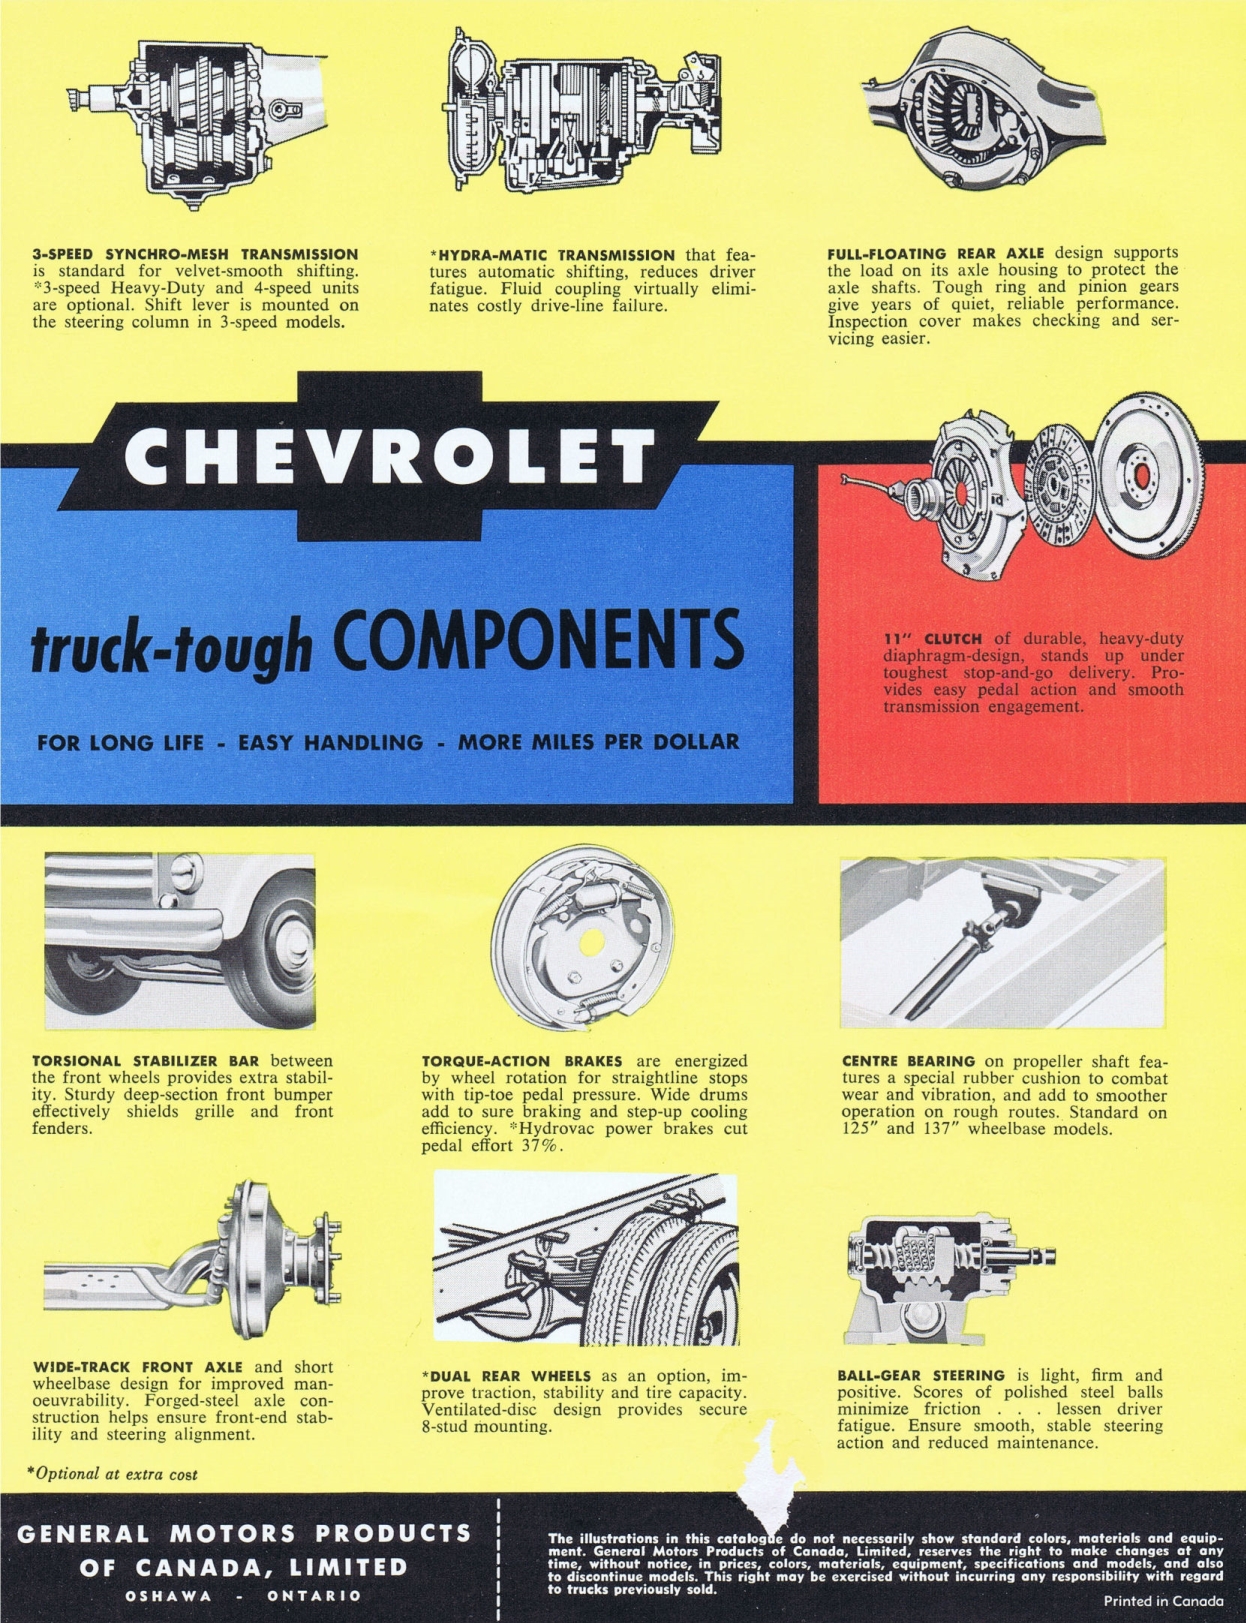 1961_Chevrolet_Forward_Control_Cdn-06